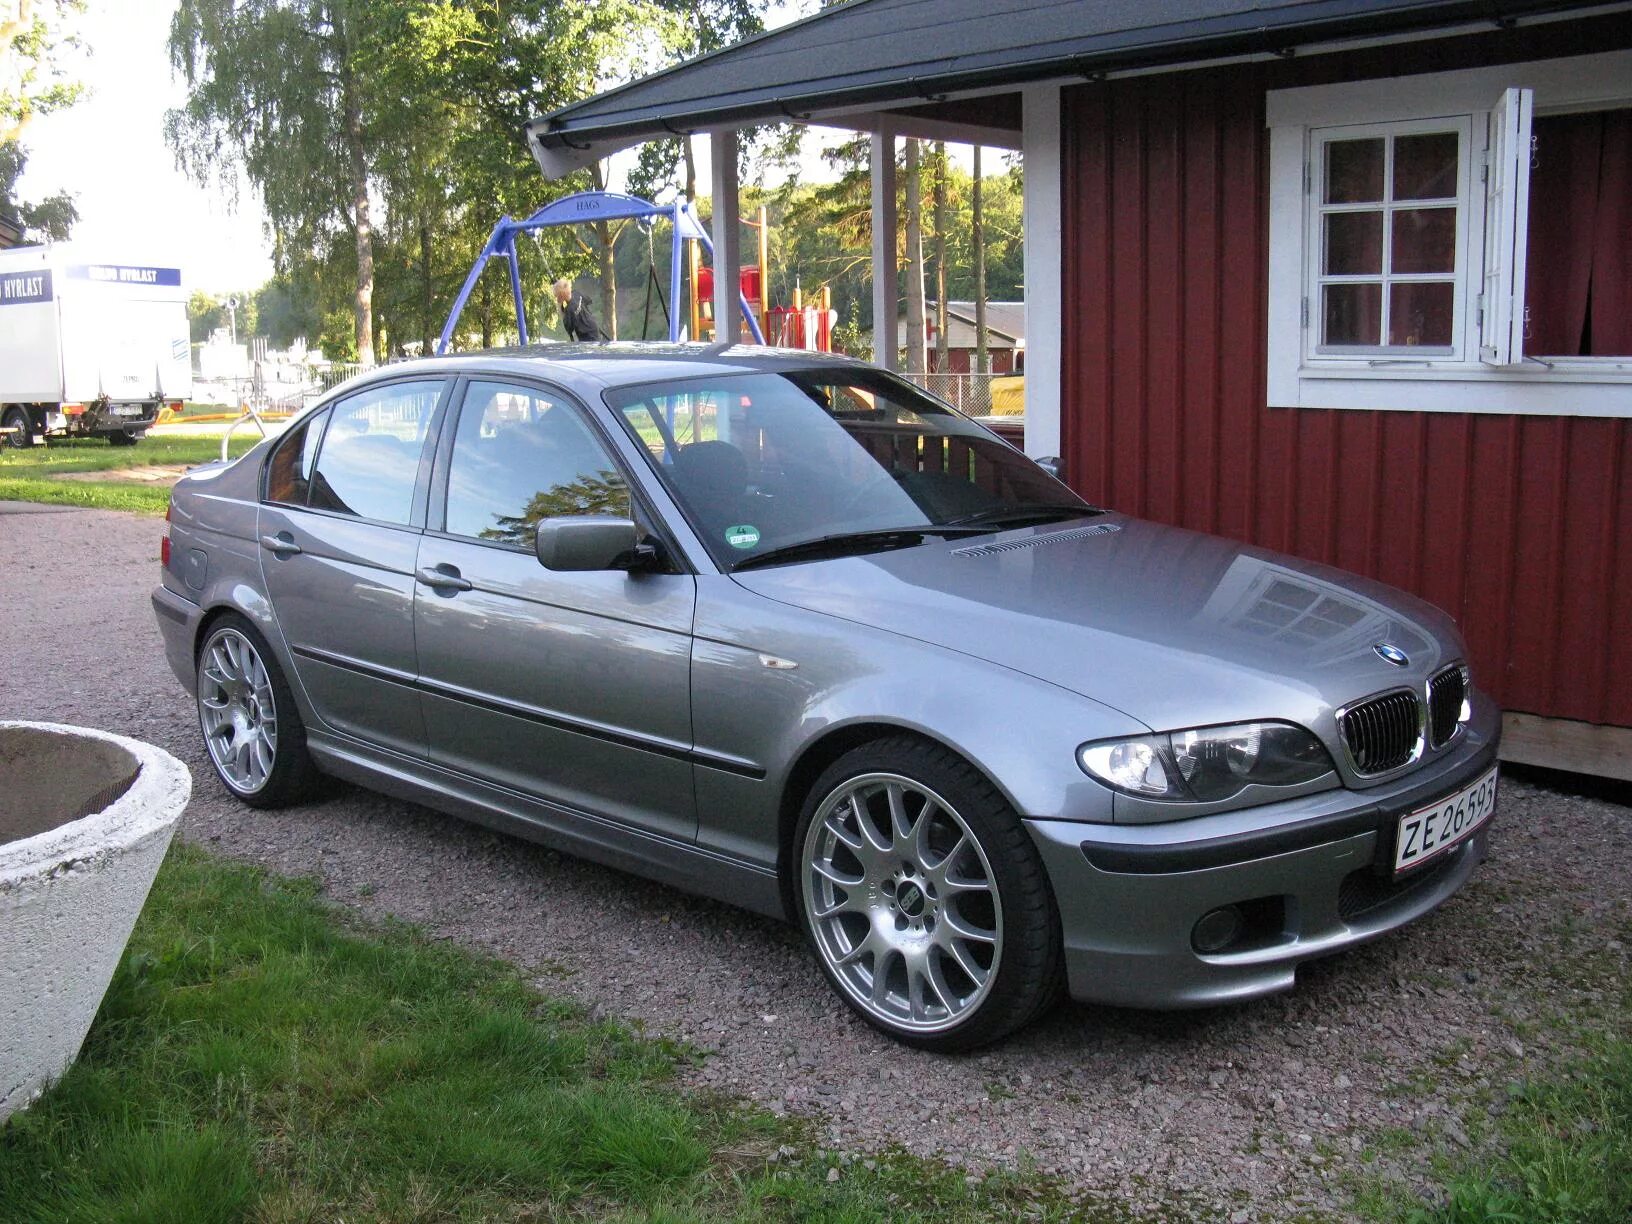 Е46 2.5. БМВ е46. BMW 325i e46. BMW e46 1997. БМВ е46 серая.